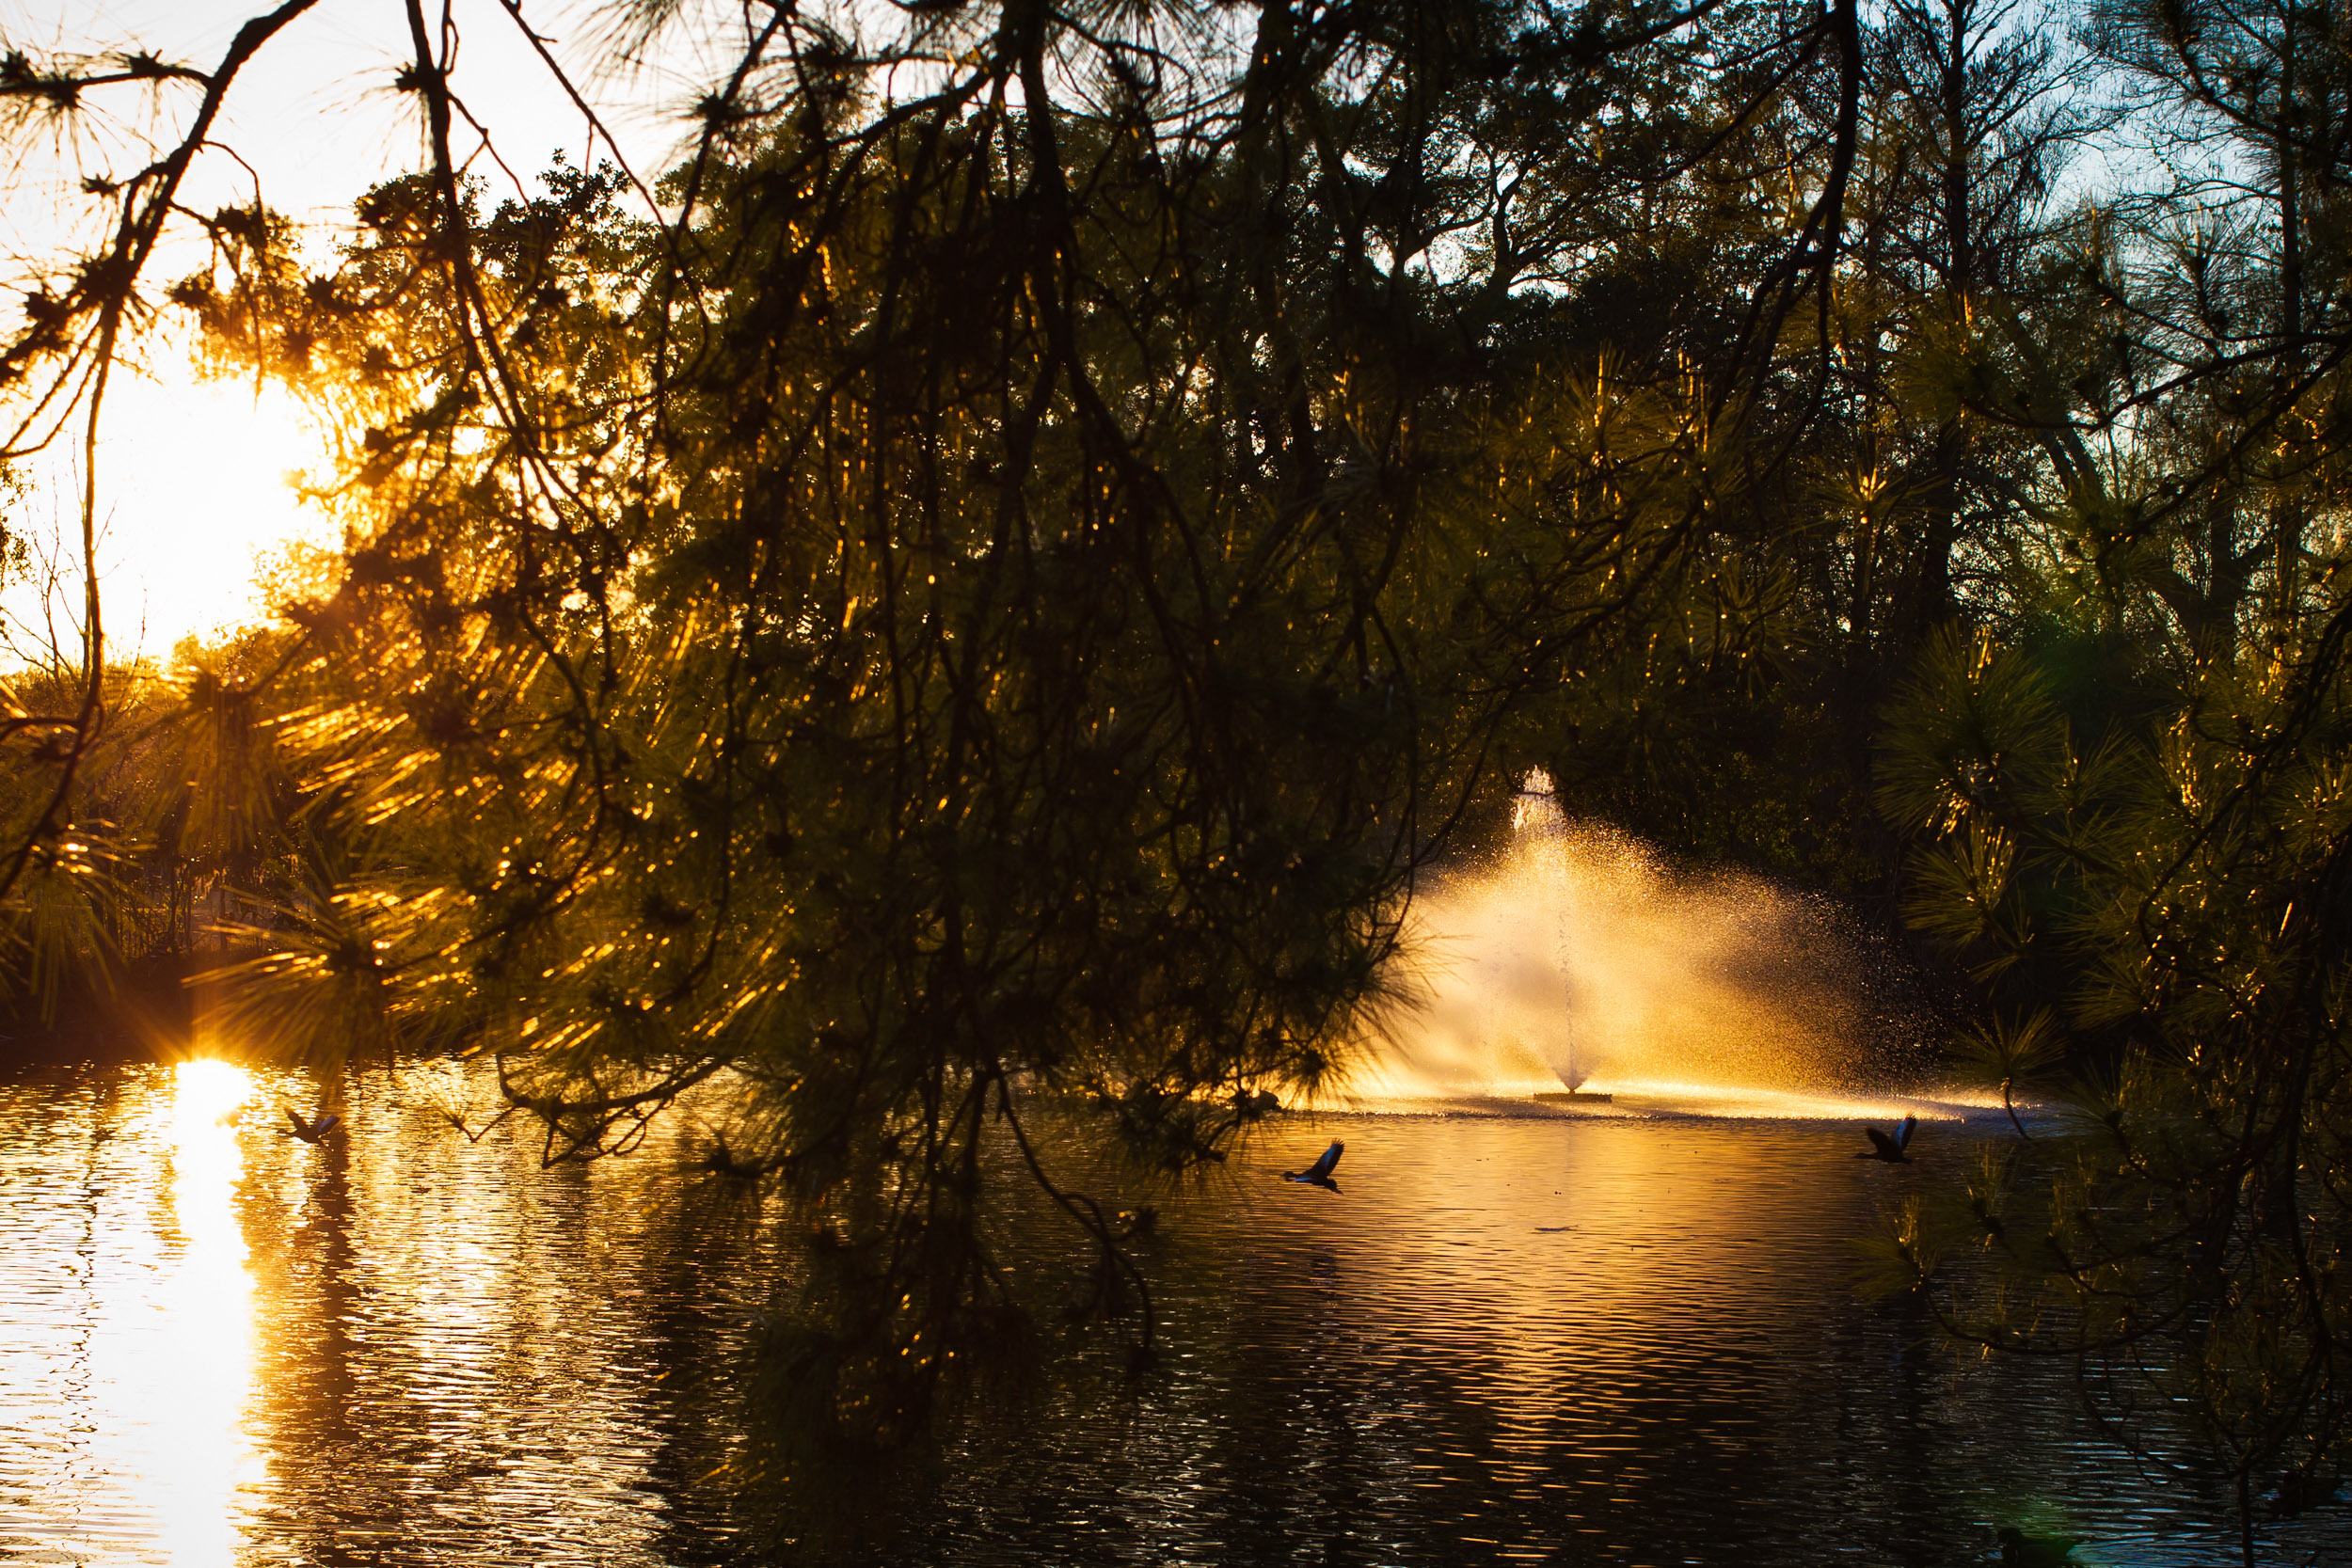 Ducks glide across an Audubon Park pond